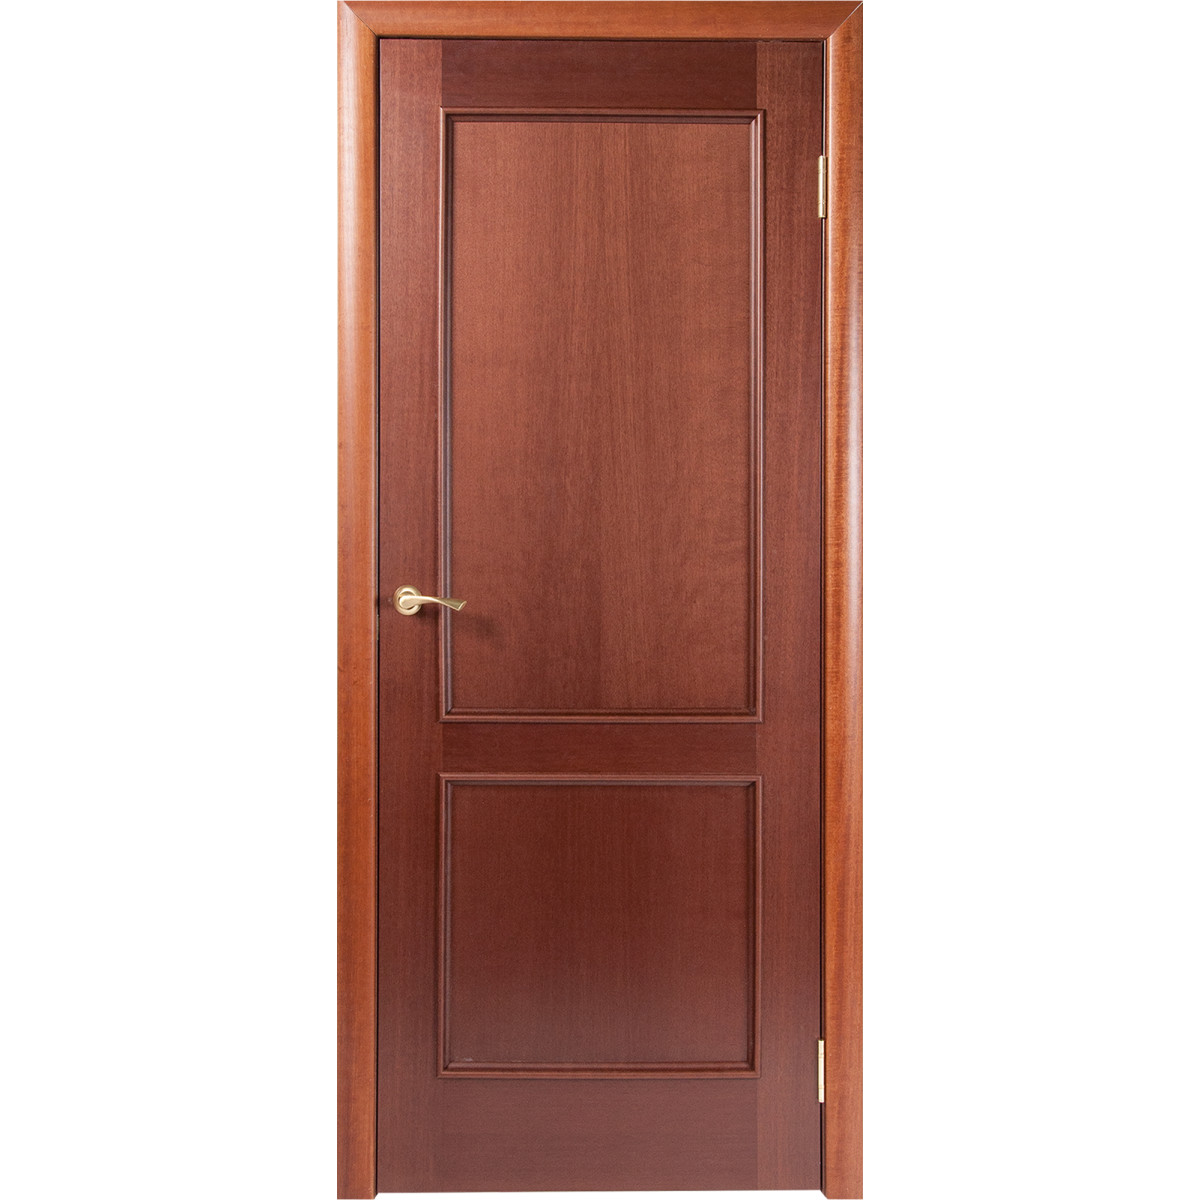 Дверь межкомнатная глухая шпонированное Этерно 90x200 см цвет итальянский орех